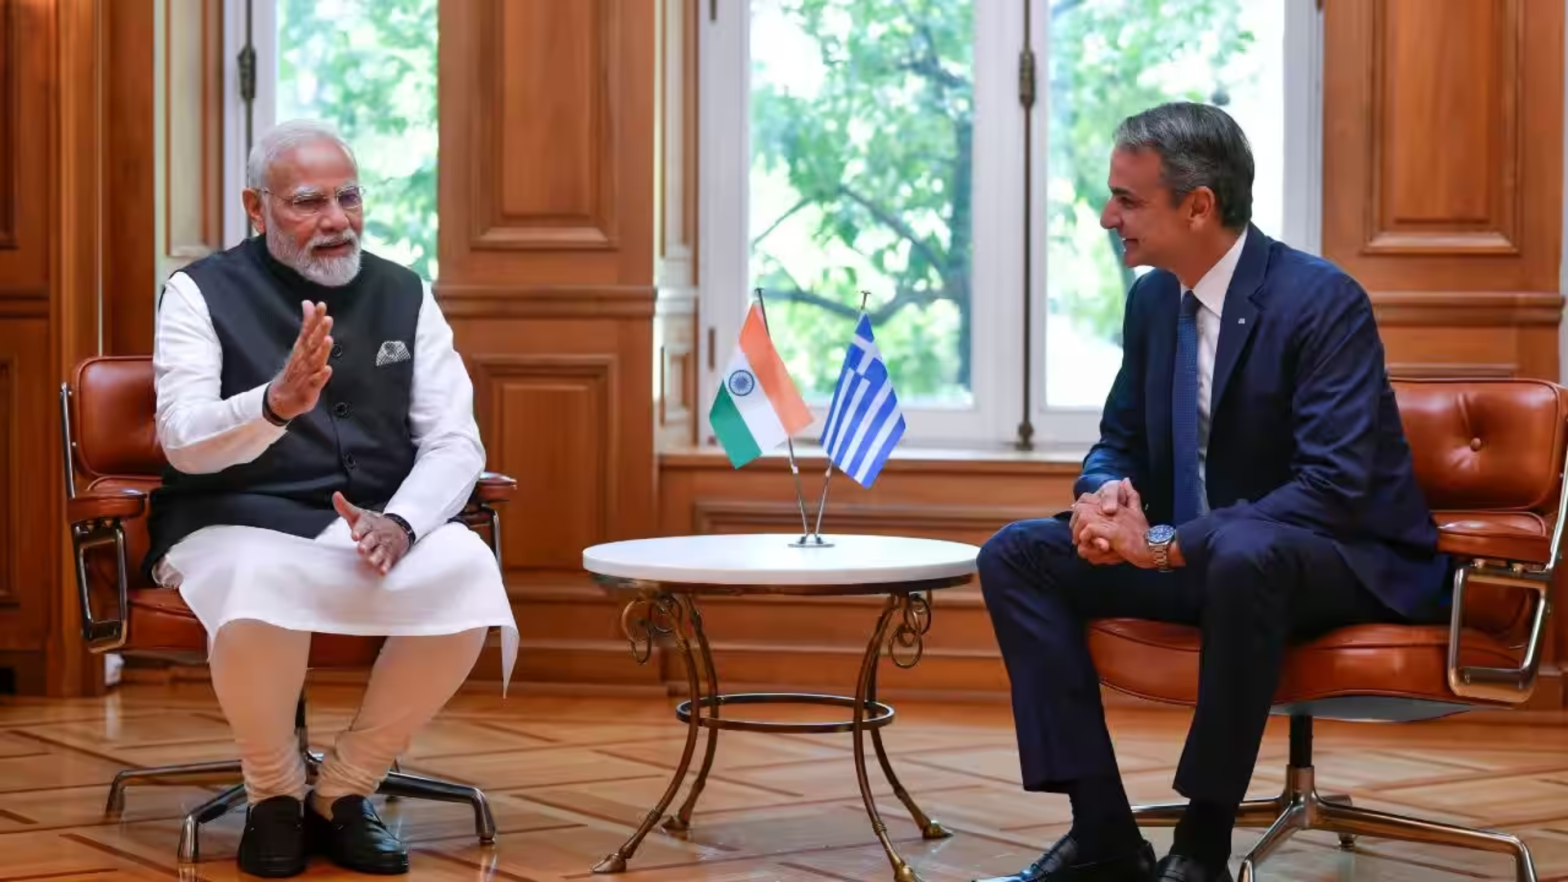 ग्रीक प्रधानमंत्री 15 वर्षों में पहली बार करेंगें भारत की राजकीय यात्रा